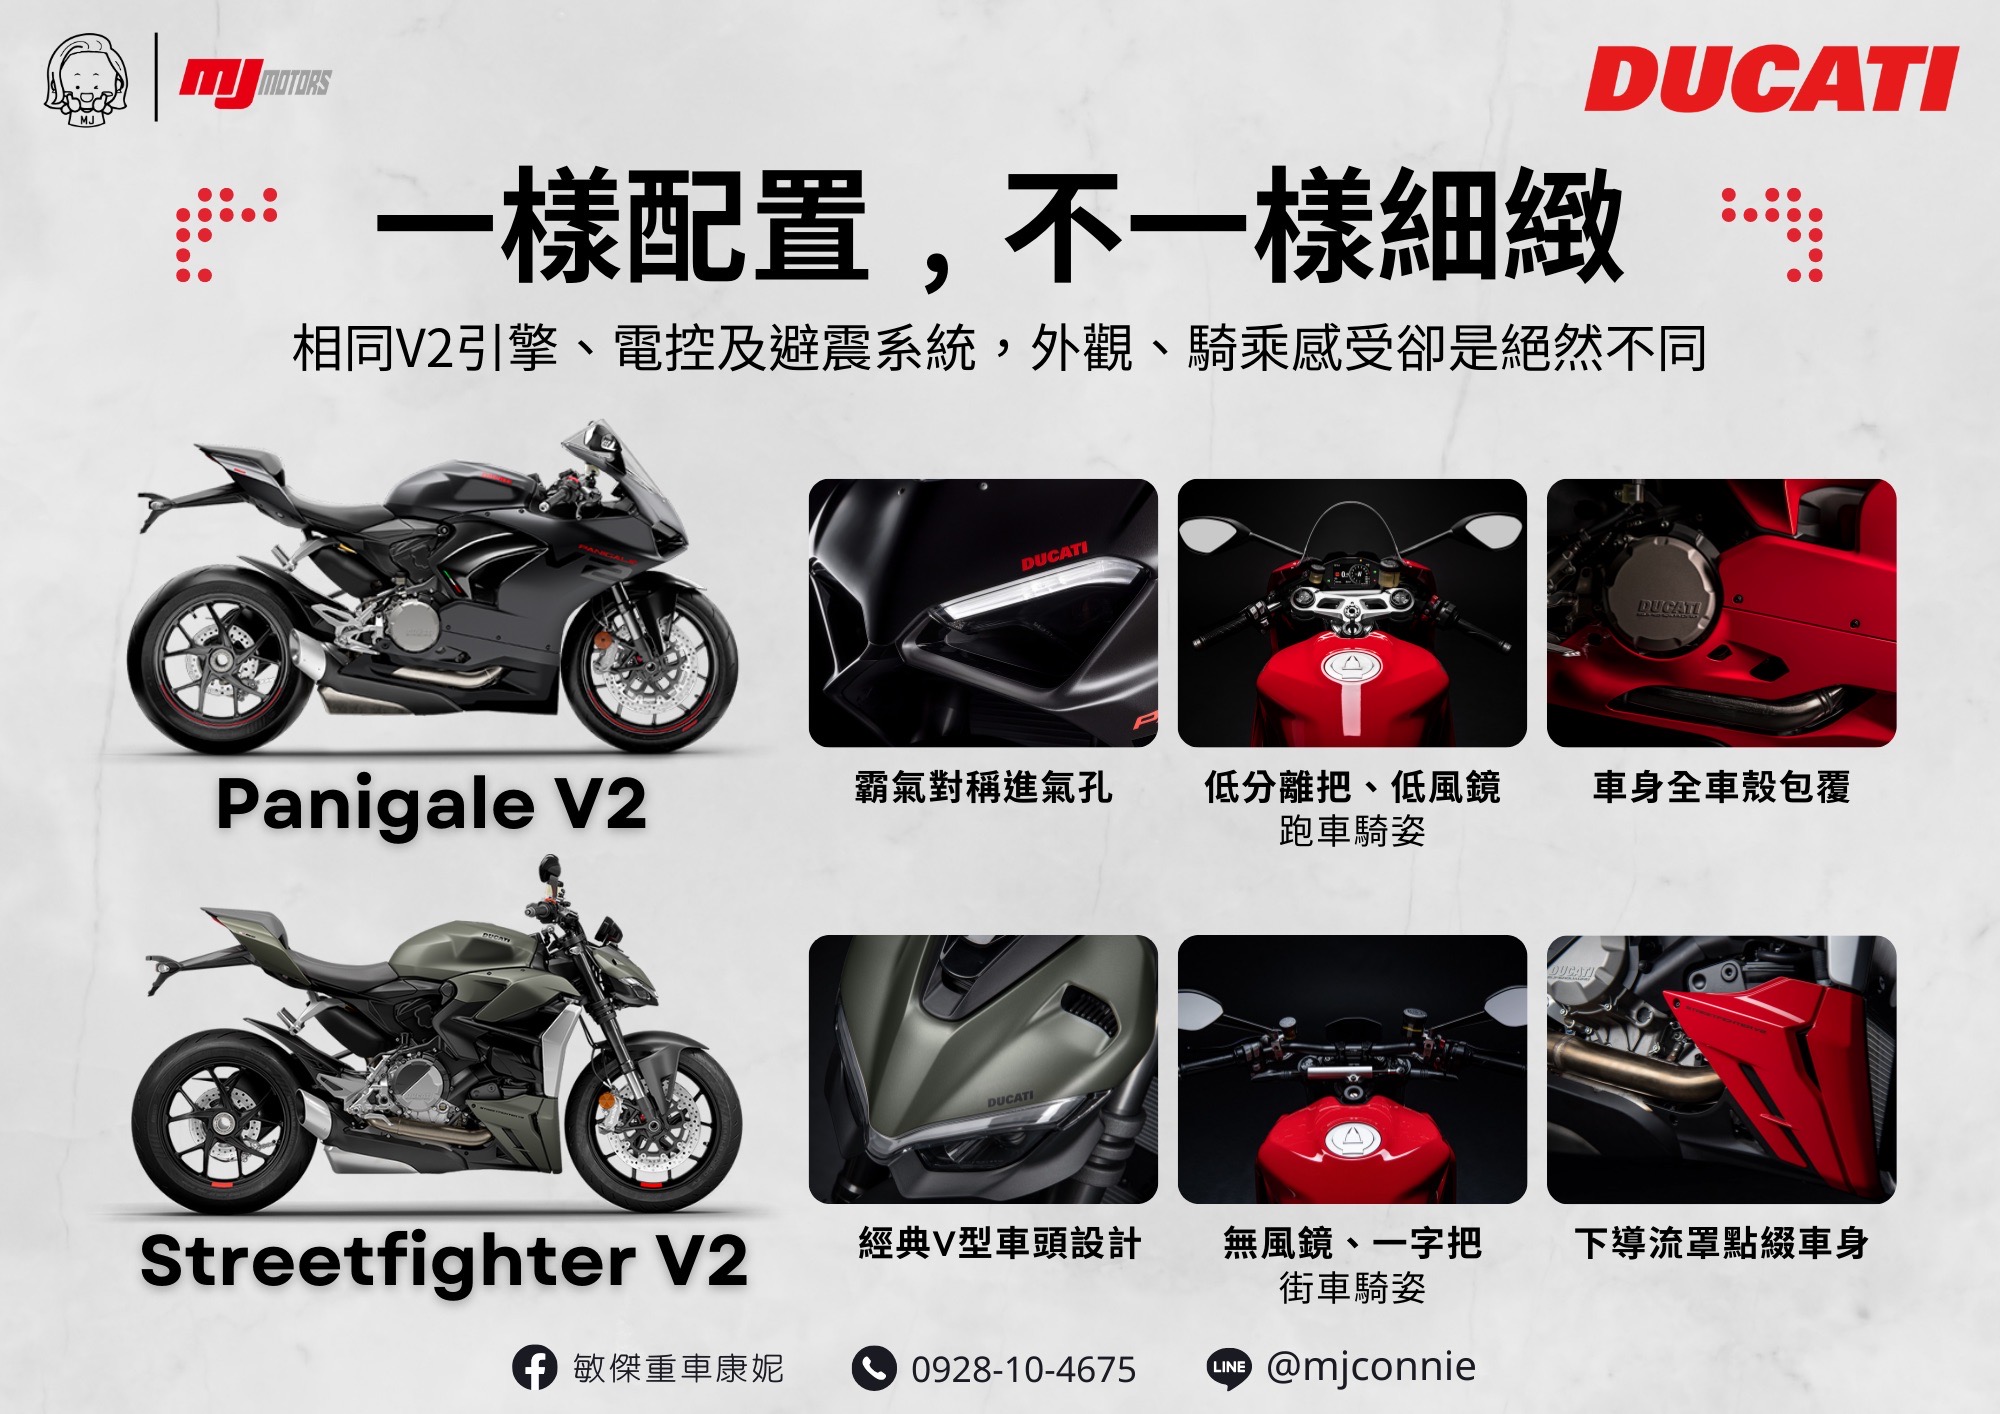 【敏傑車業資深銷售專員 康妮 Connie】DUCATI PANIGALE V2 - 「Webike-摩托車市」 『敏傑康妮』Ducati Panigale V2 StreetFighter V2 是時候升級~體驗杜卡迪車系的魅力了!